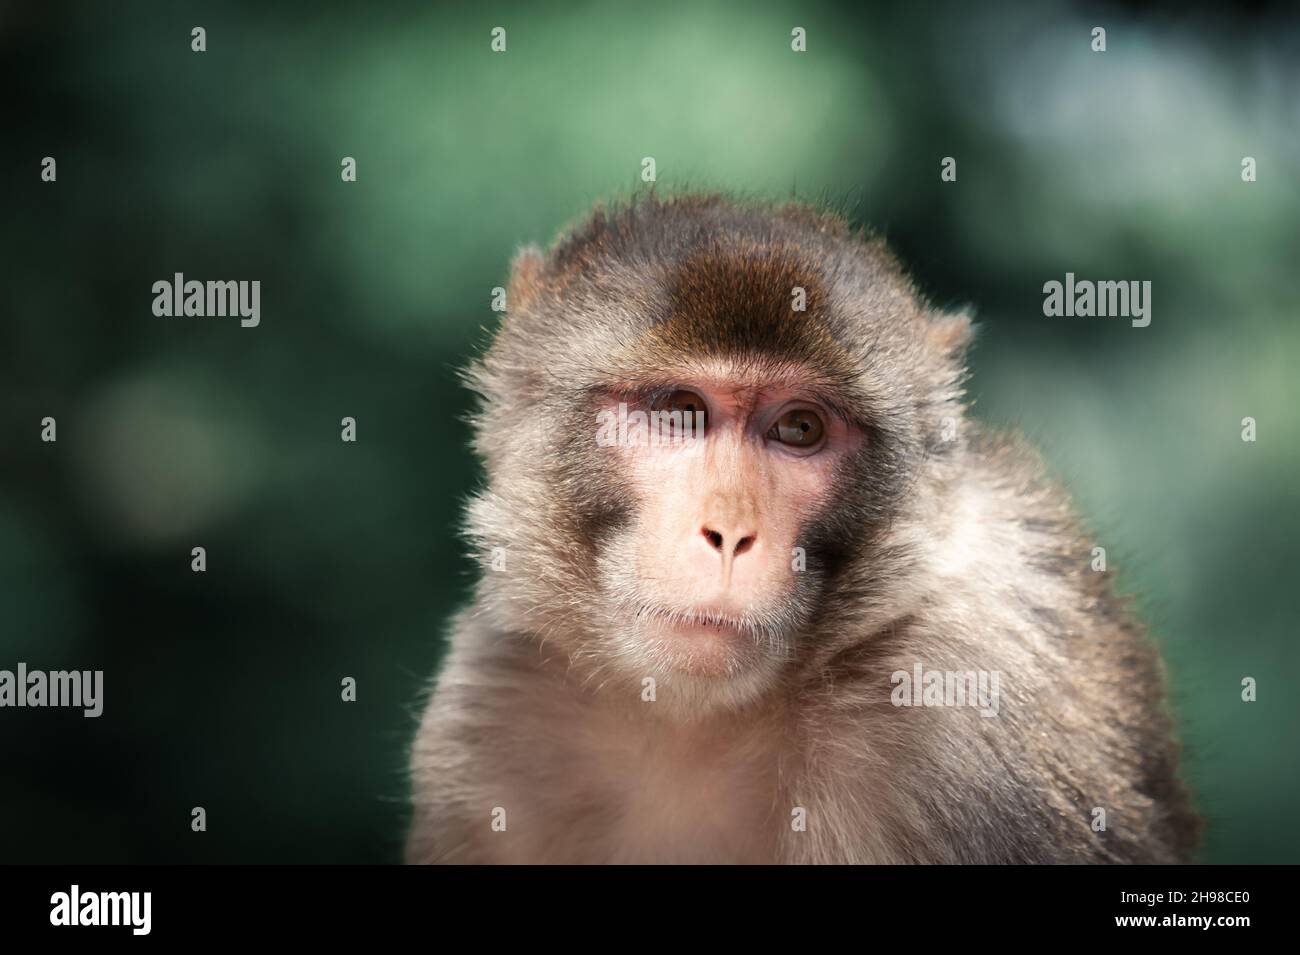 Portrait d'un singe rhésus macaque (Macaca mulatta) sur fond de forêt verte, Inde.Photographie d'animaux Banque D'Images